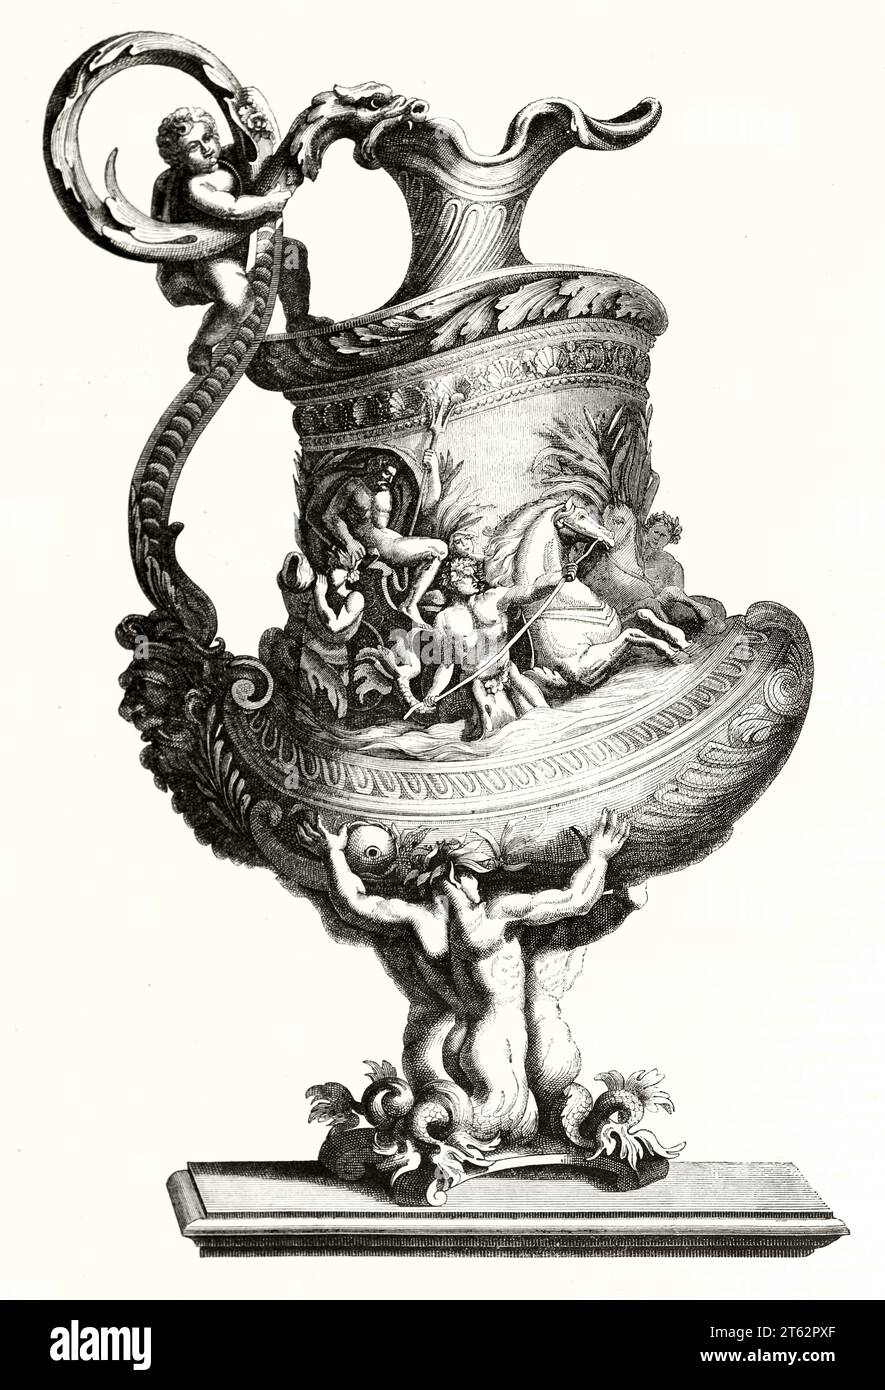 Vieille illustration d'un vase. Par Jean le pauvre, publ. Sur magasin pittoresque, Paris, 1849 Banque D'Images